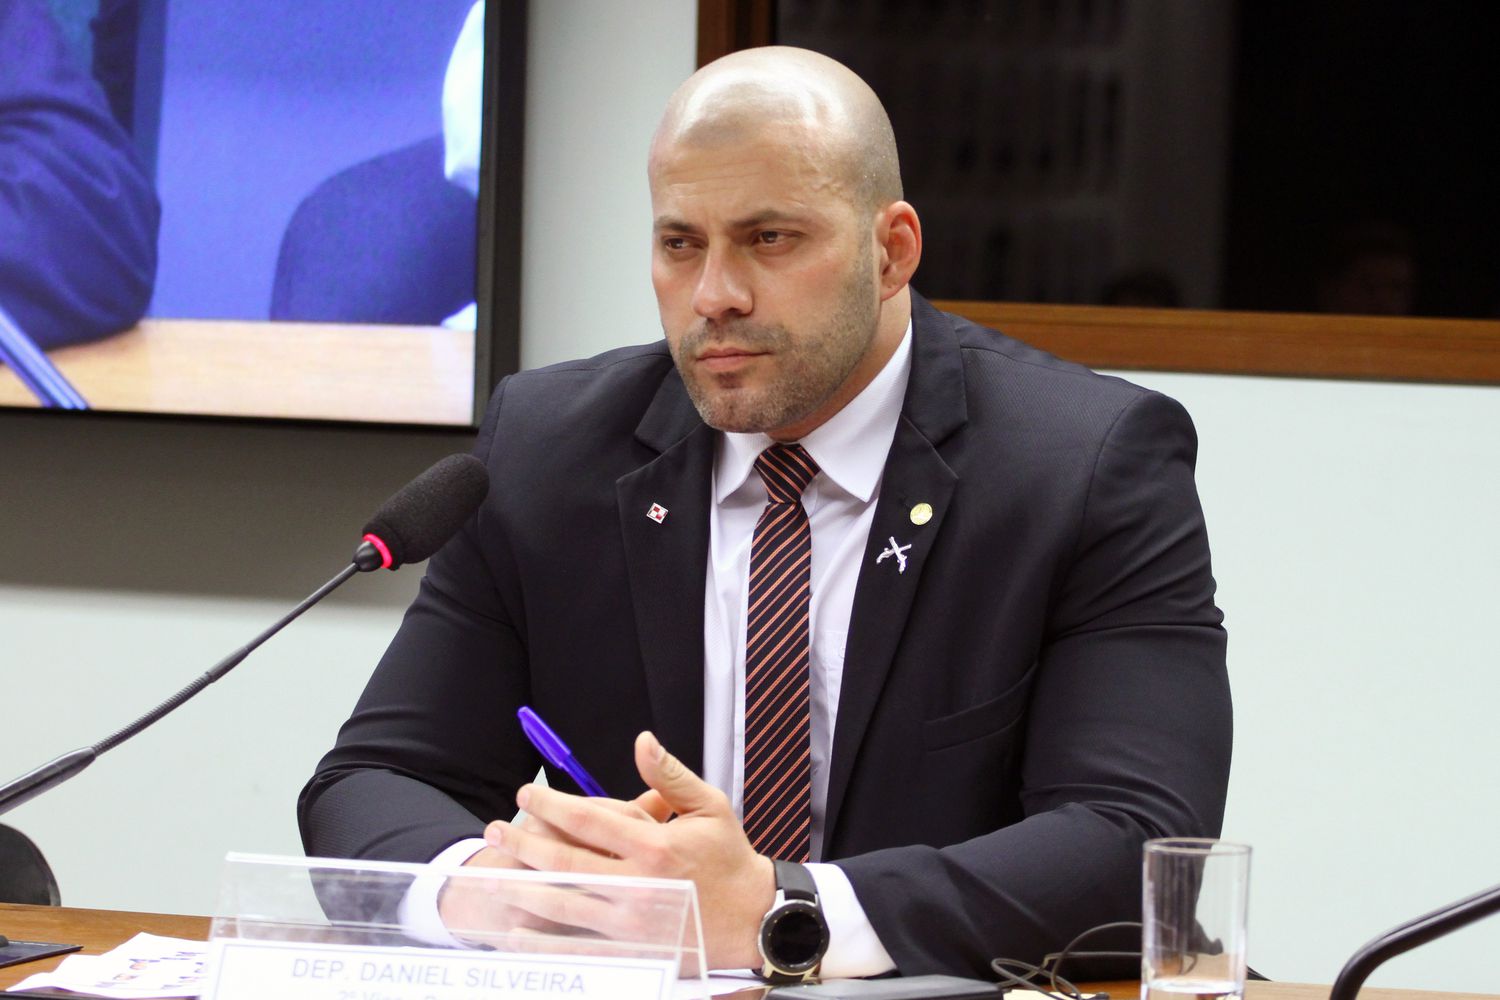 Juiz mantém Daniel Silveira preso até definição da Câmara dos Deputados nesta sexta